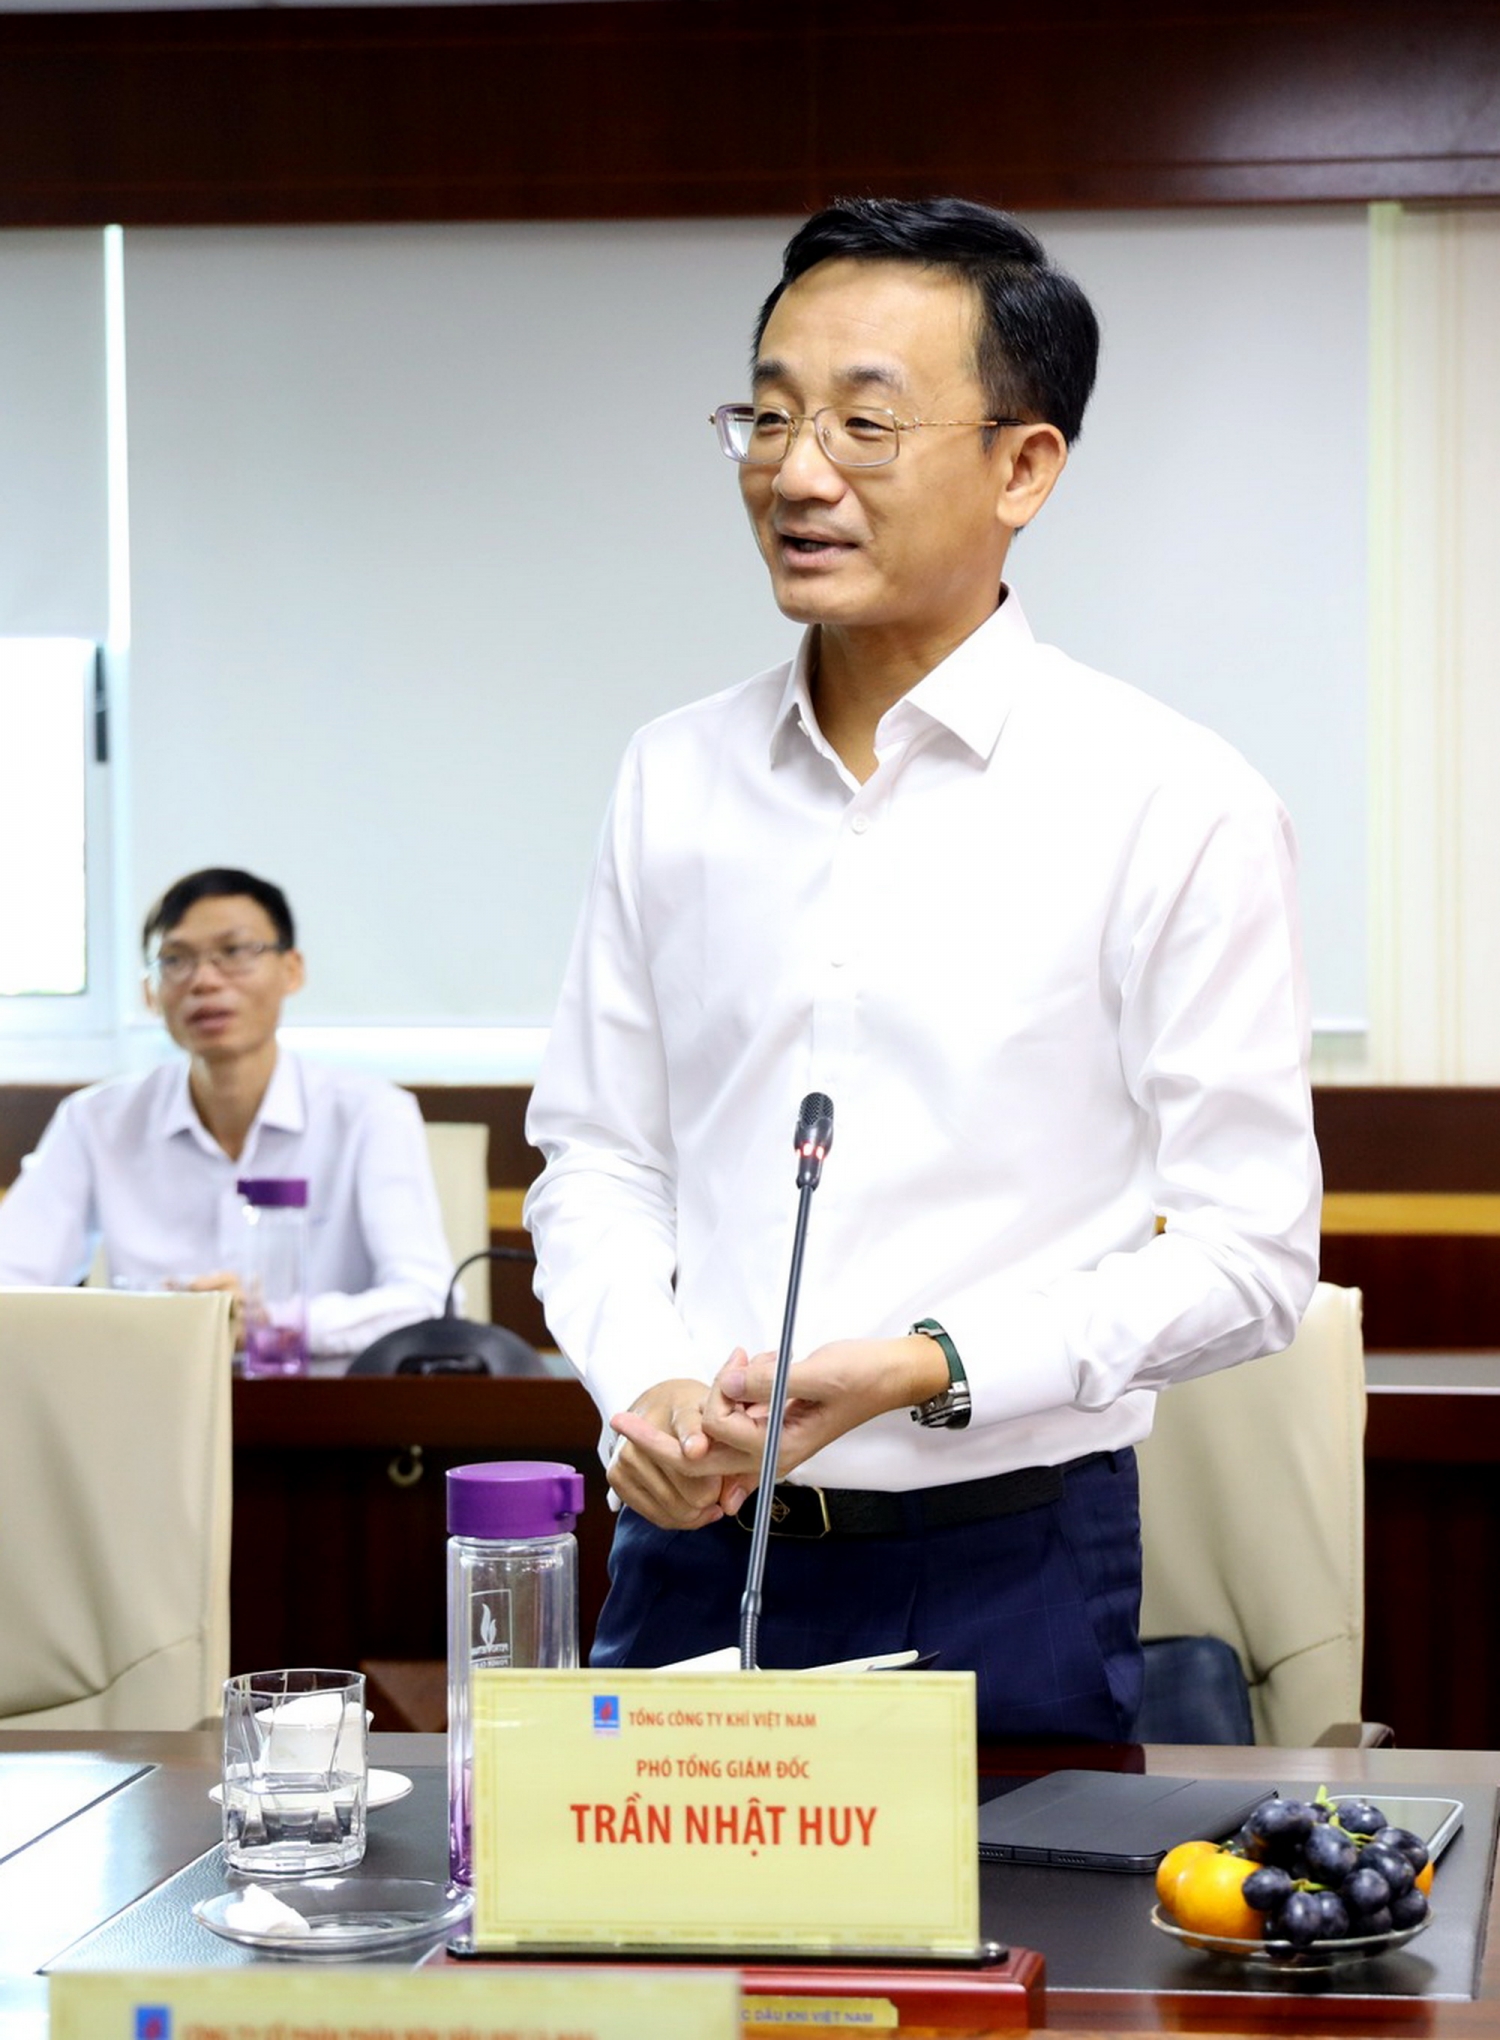 Đồng chí Trần Nhật Huy – Phó Tổng Giám đốc PV GAS phát biểu tại Hội nghị